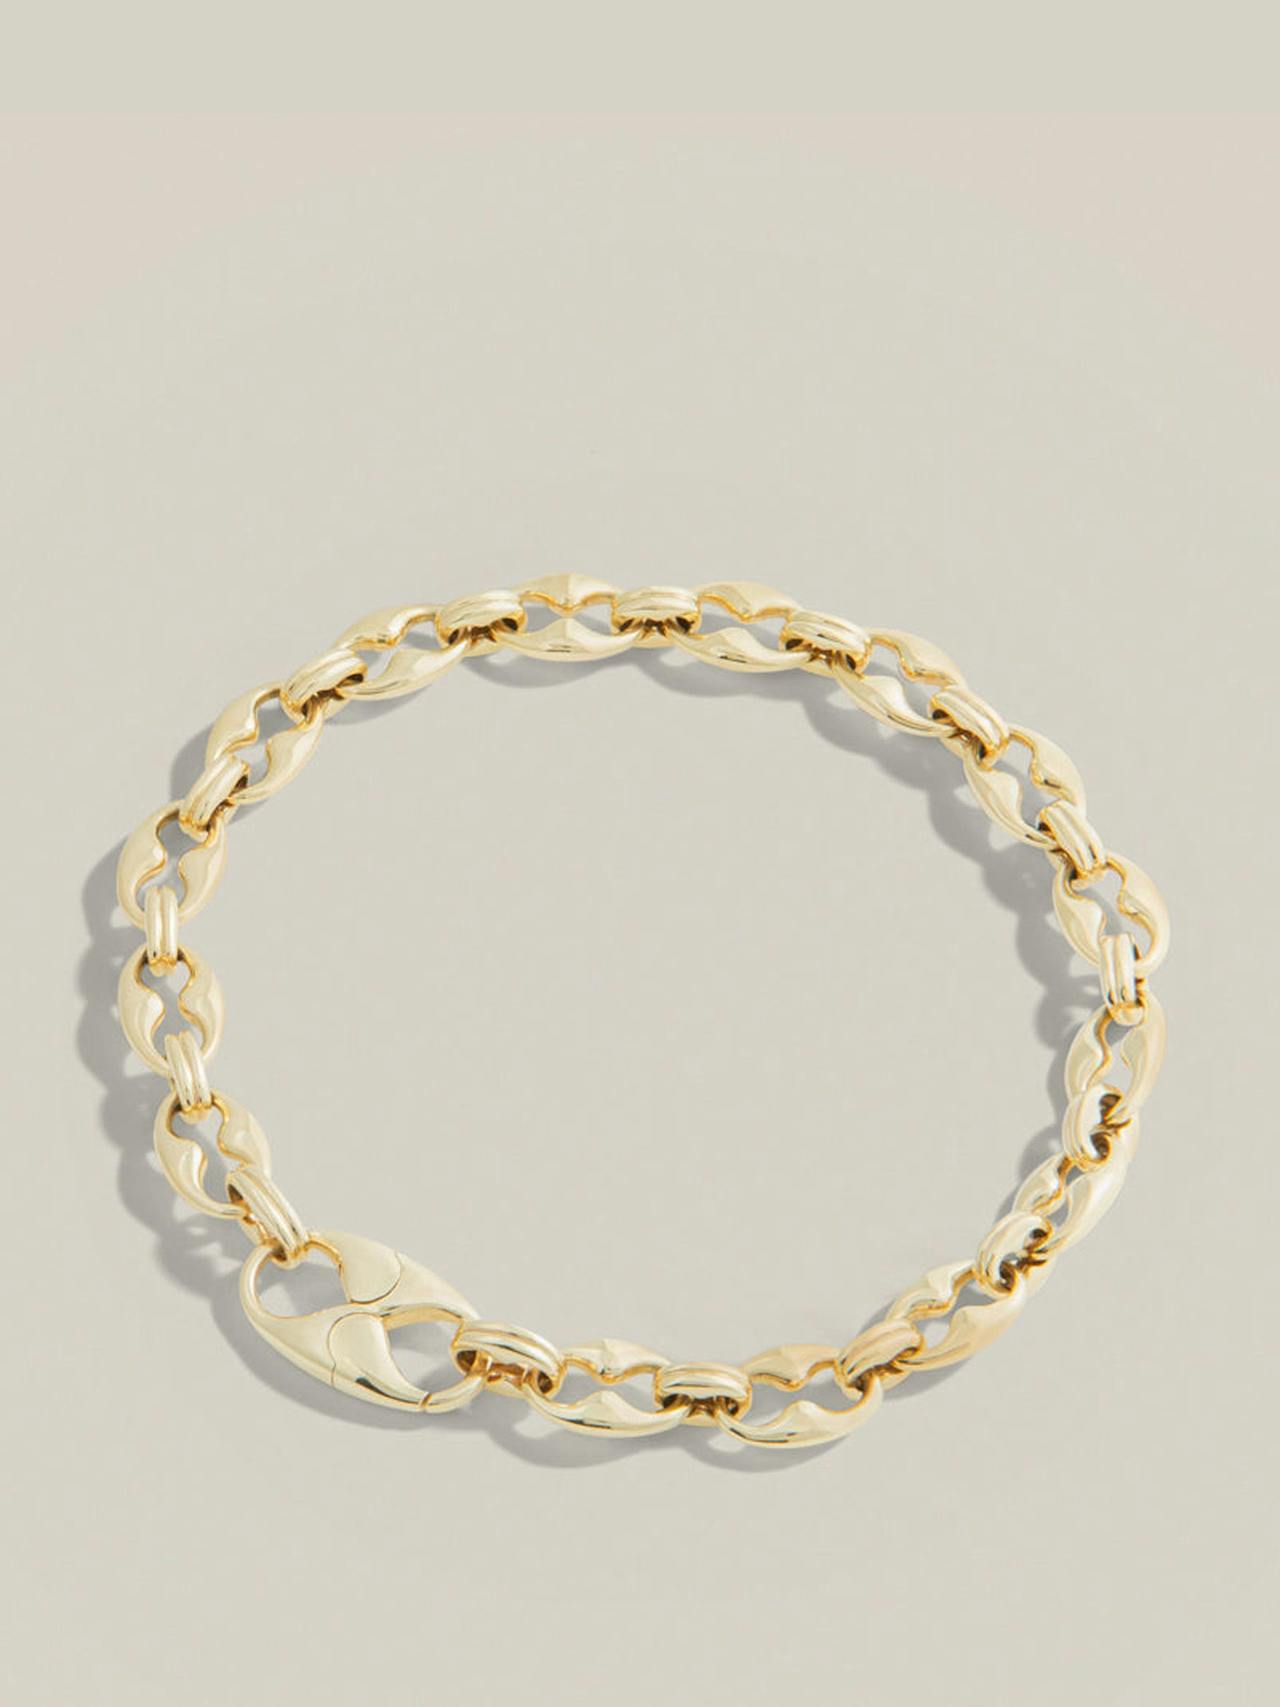 Baby Persephone bracelet